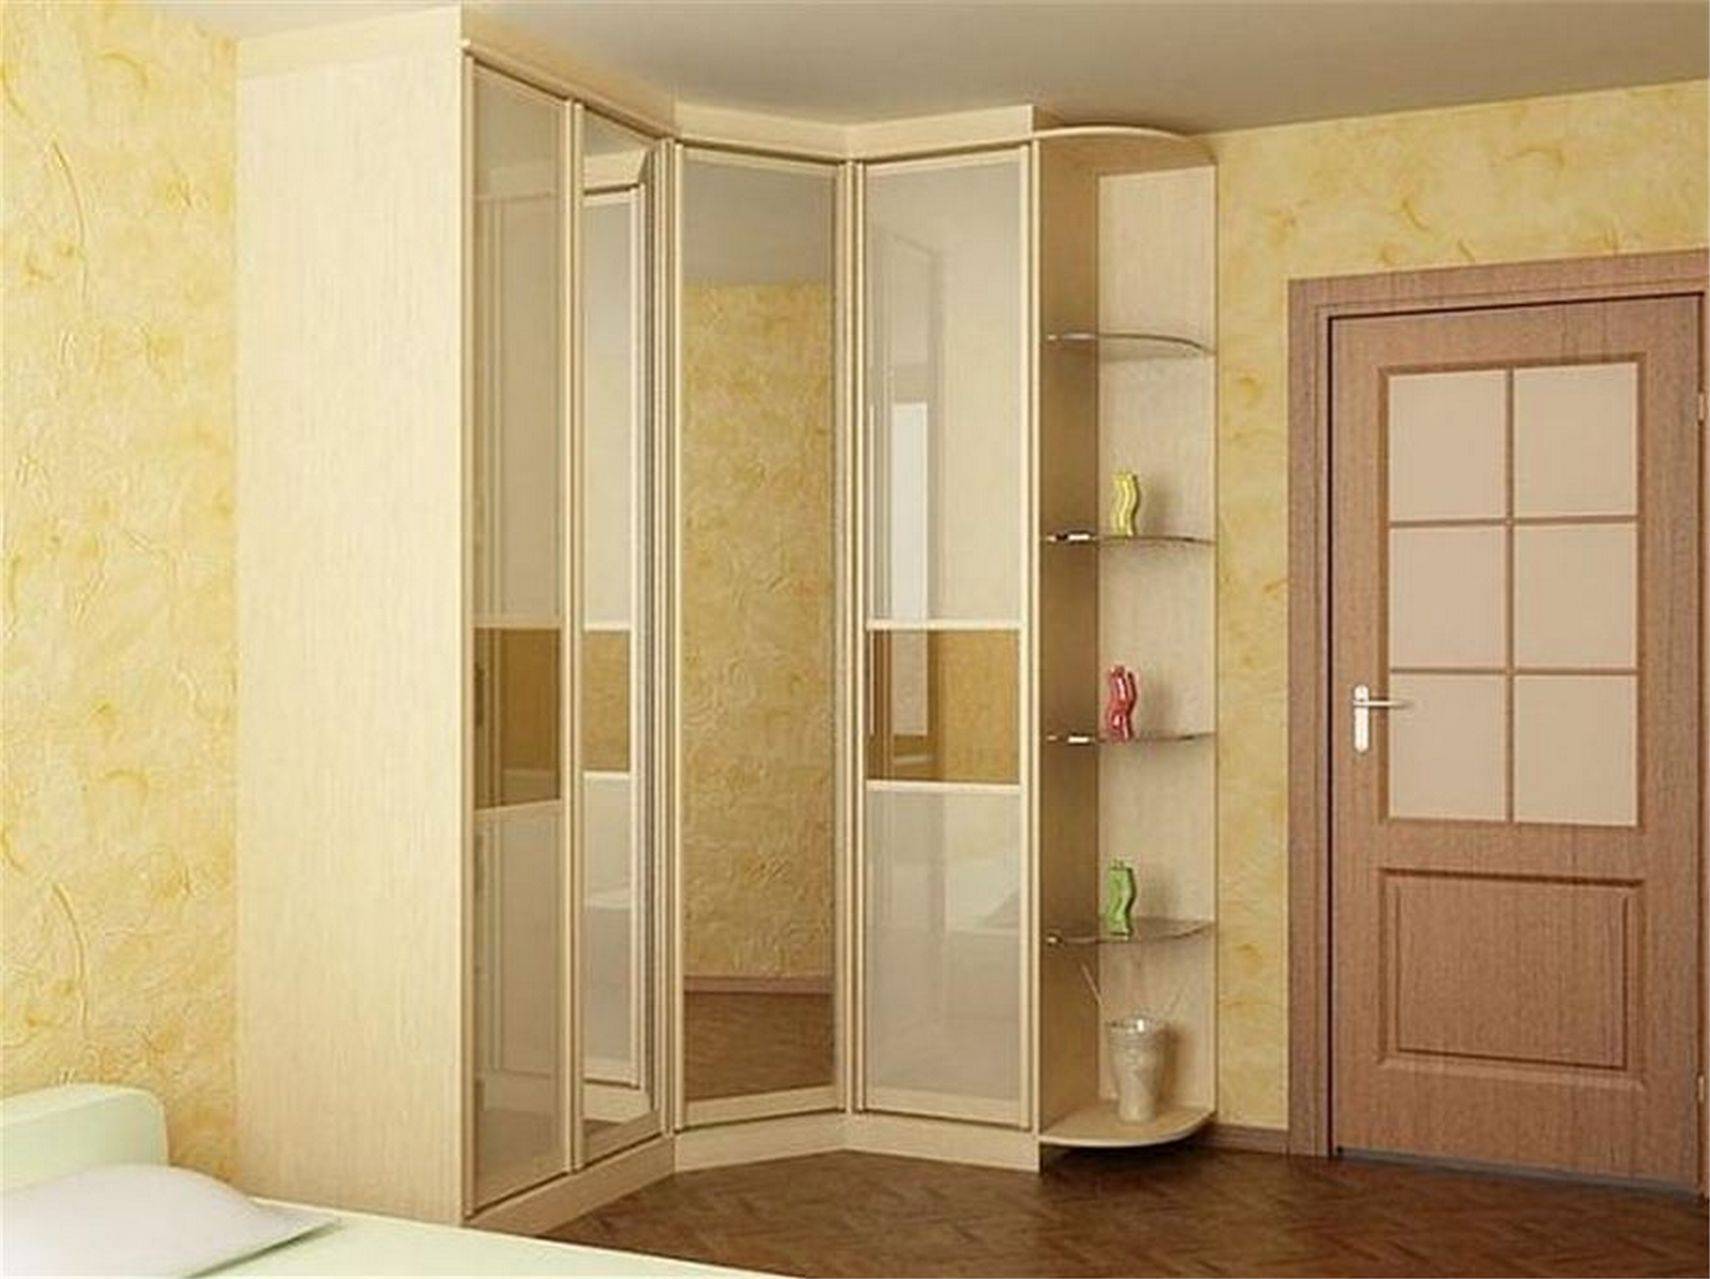 Угловой шкаф в спальню: идеи, дизайн и размеры, интерьер маленькой спальни с угловым шкафом